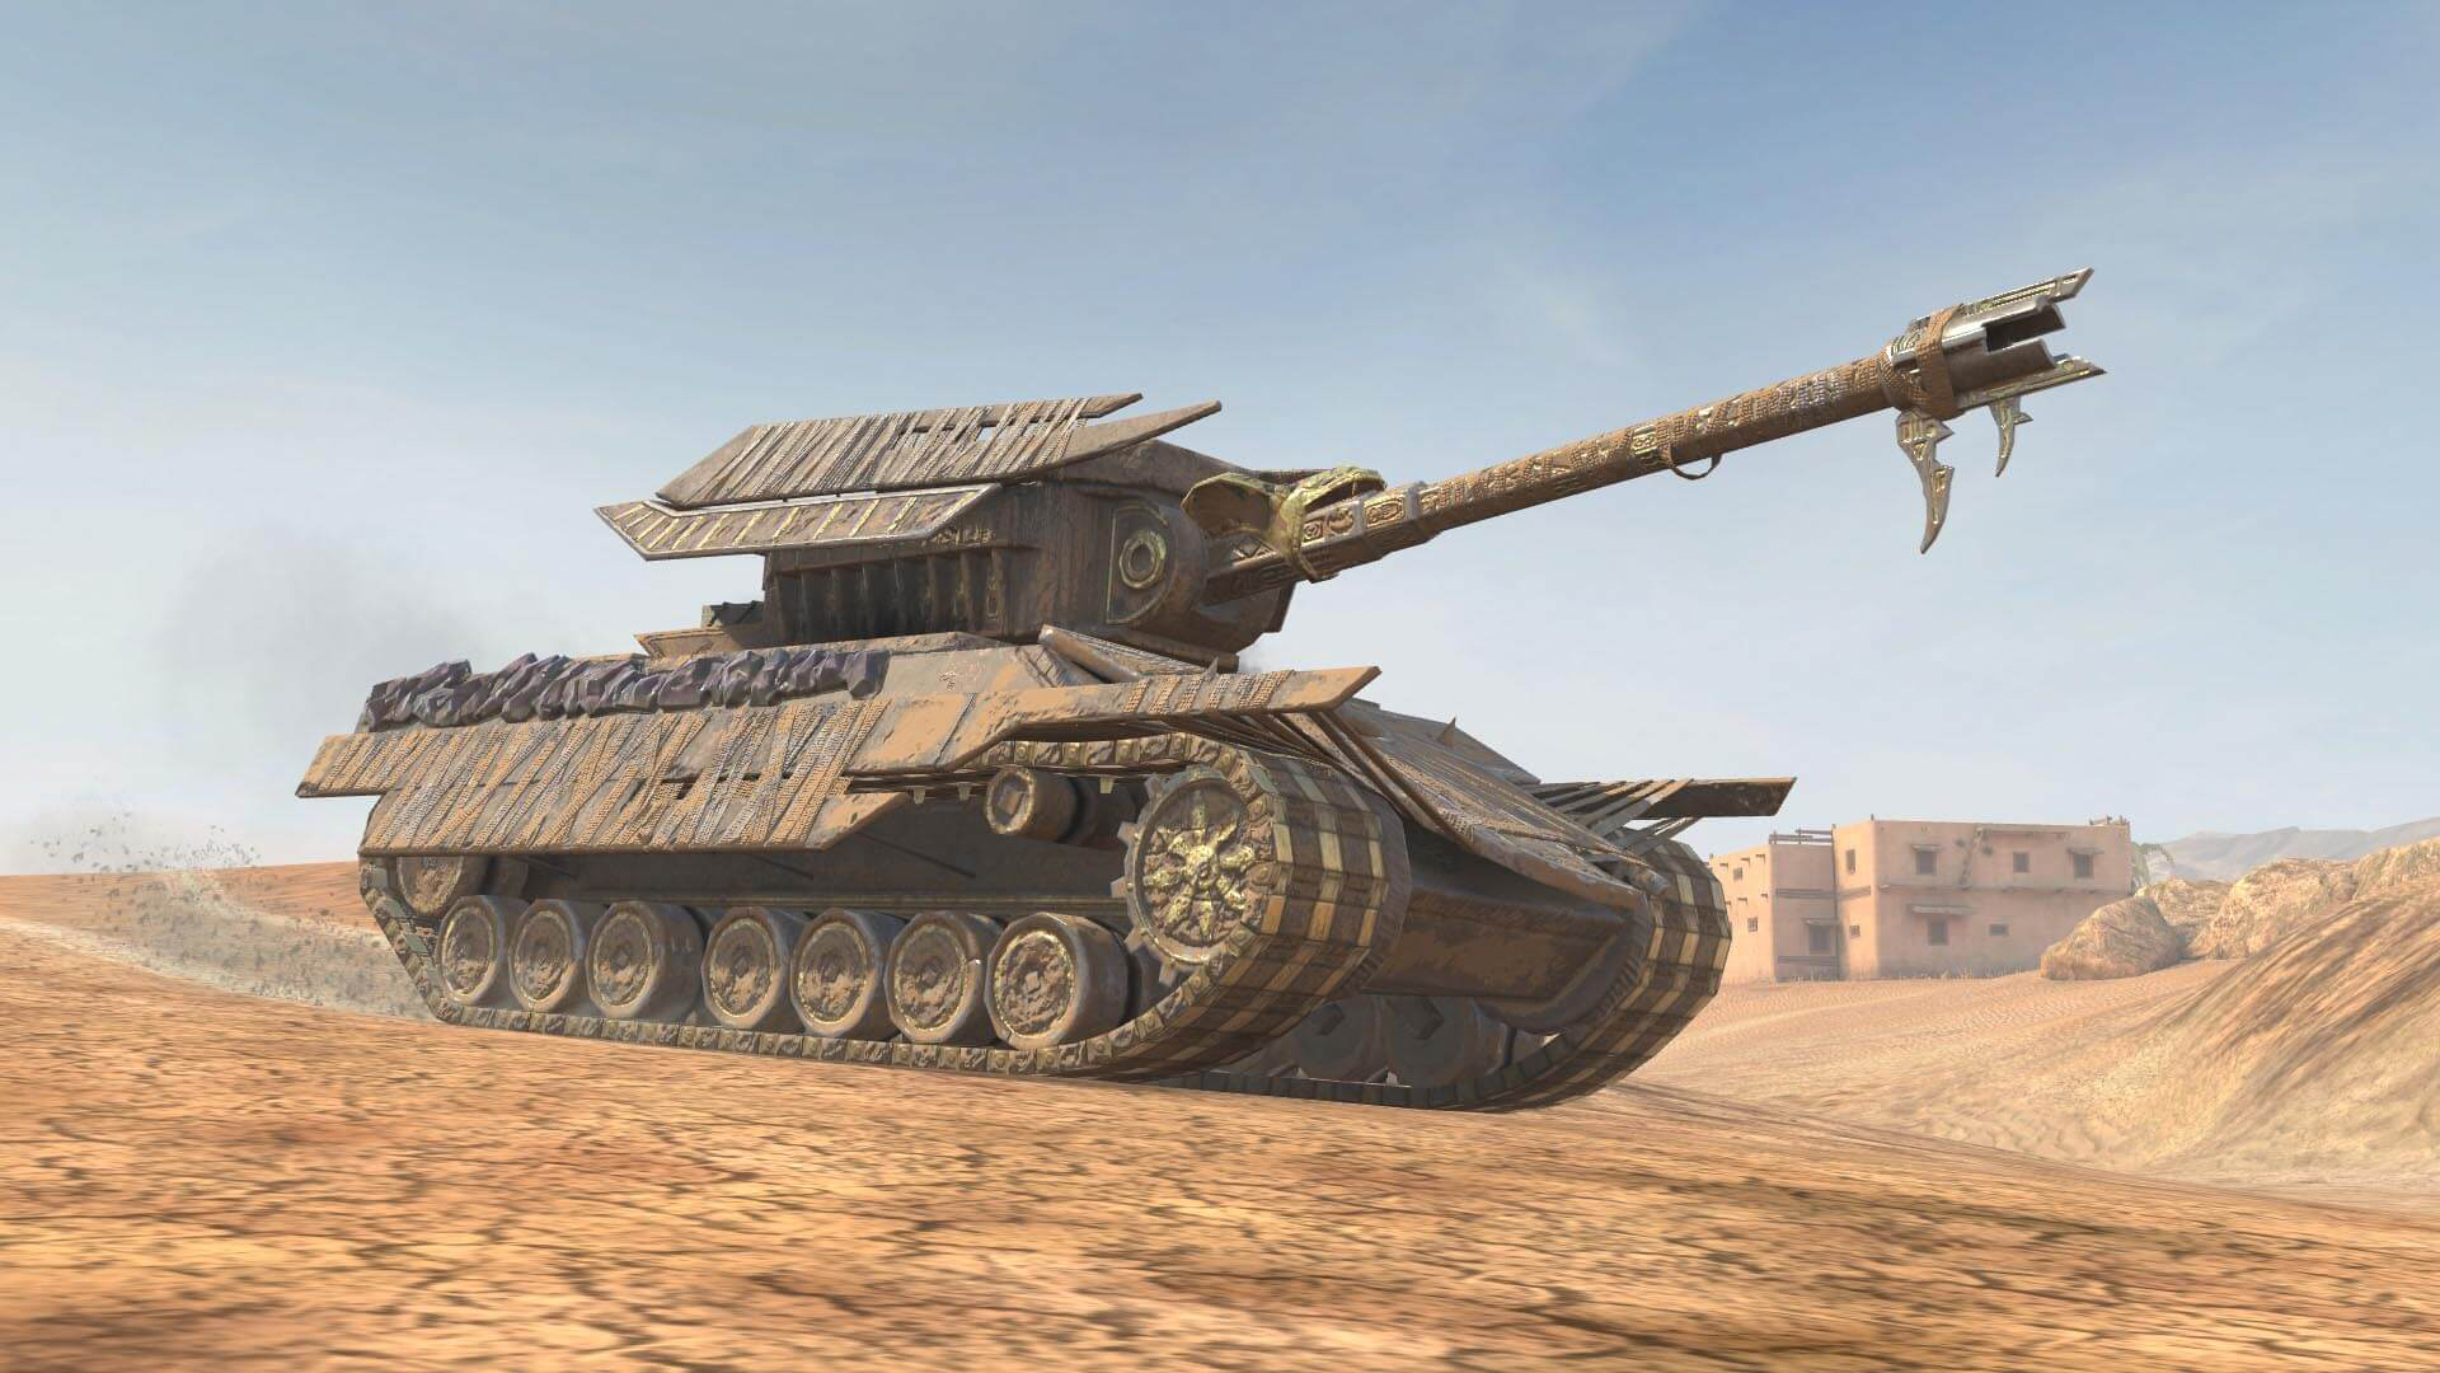 Фараон — выдуманный разработчиками тяжелый танк седьмого уровня. Его можно было получить в рамках специального события